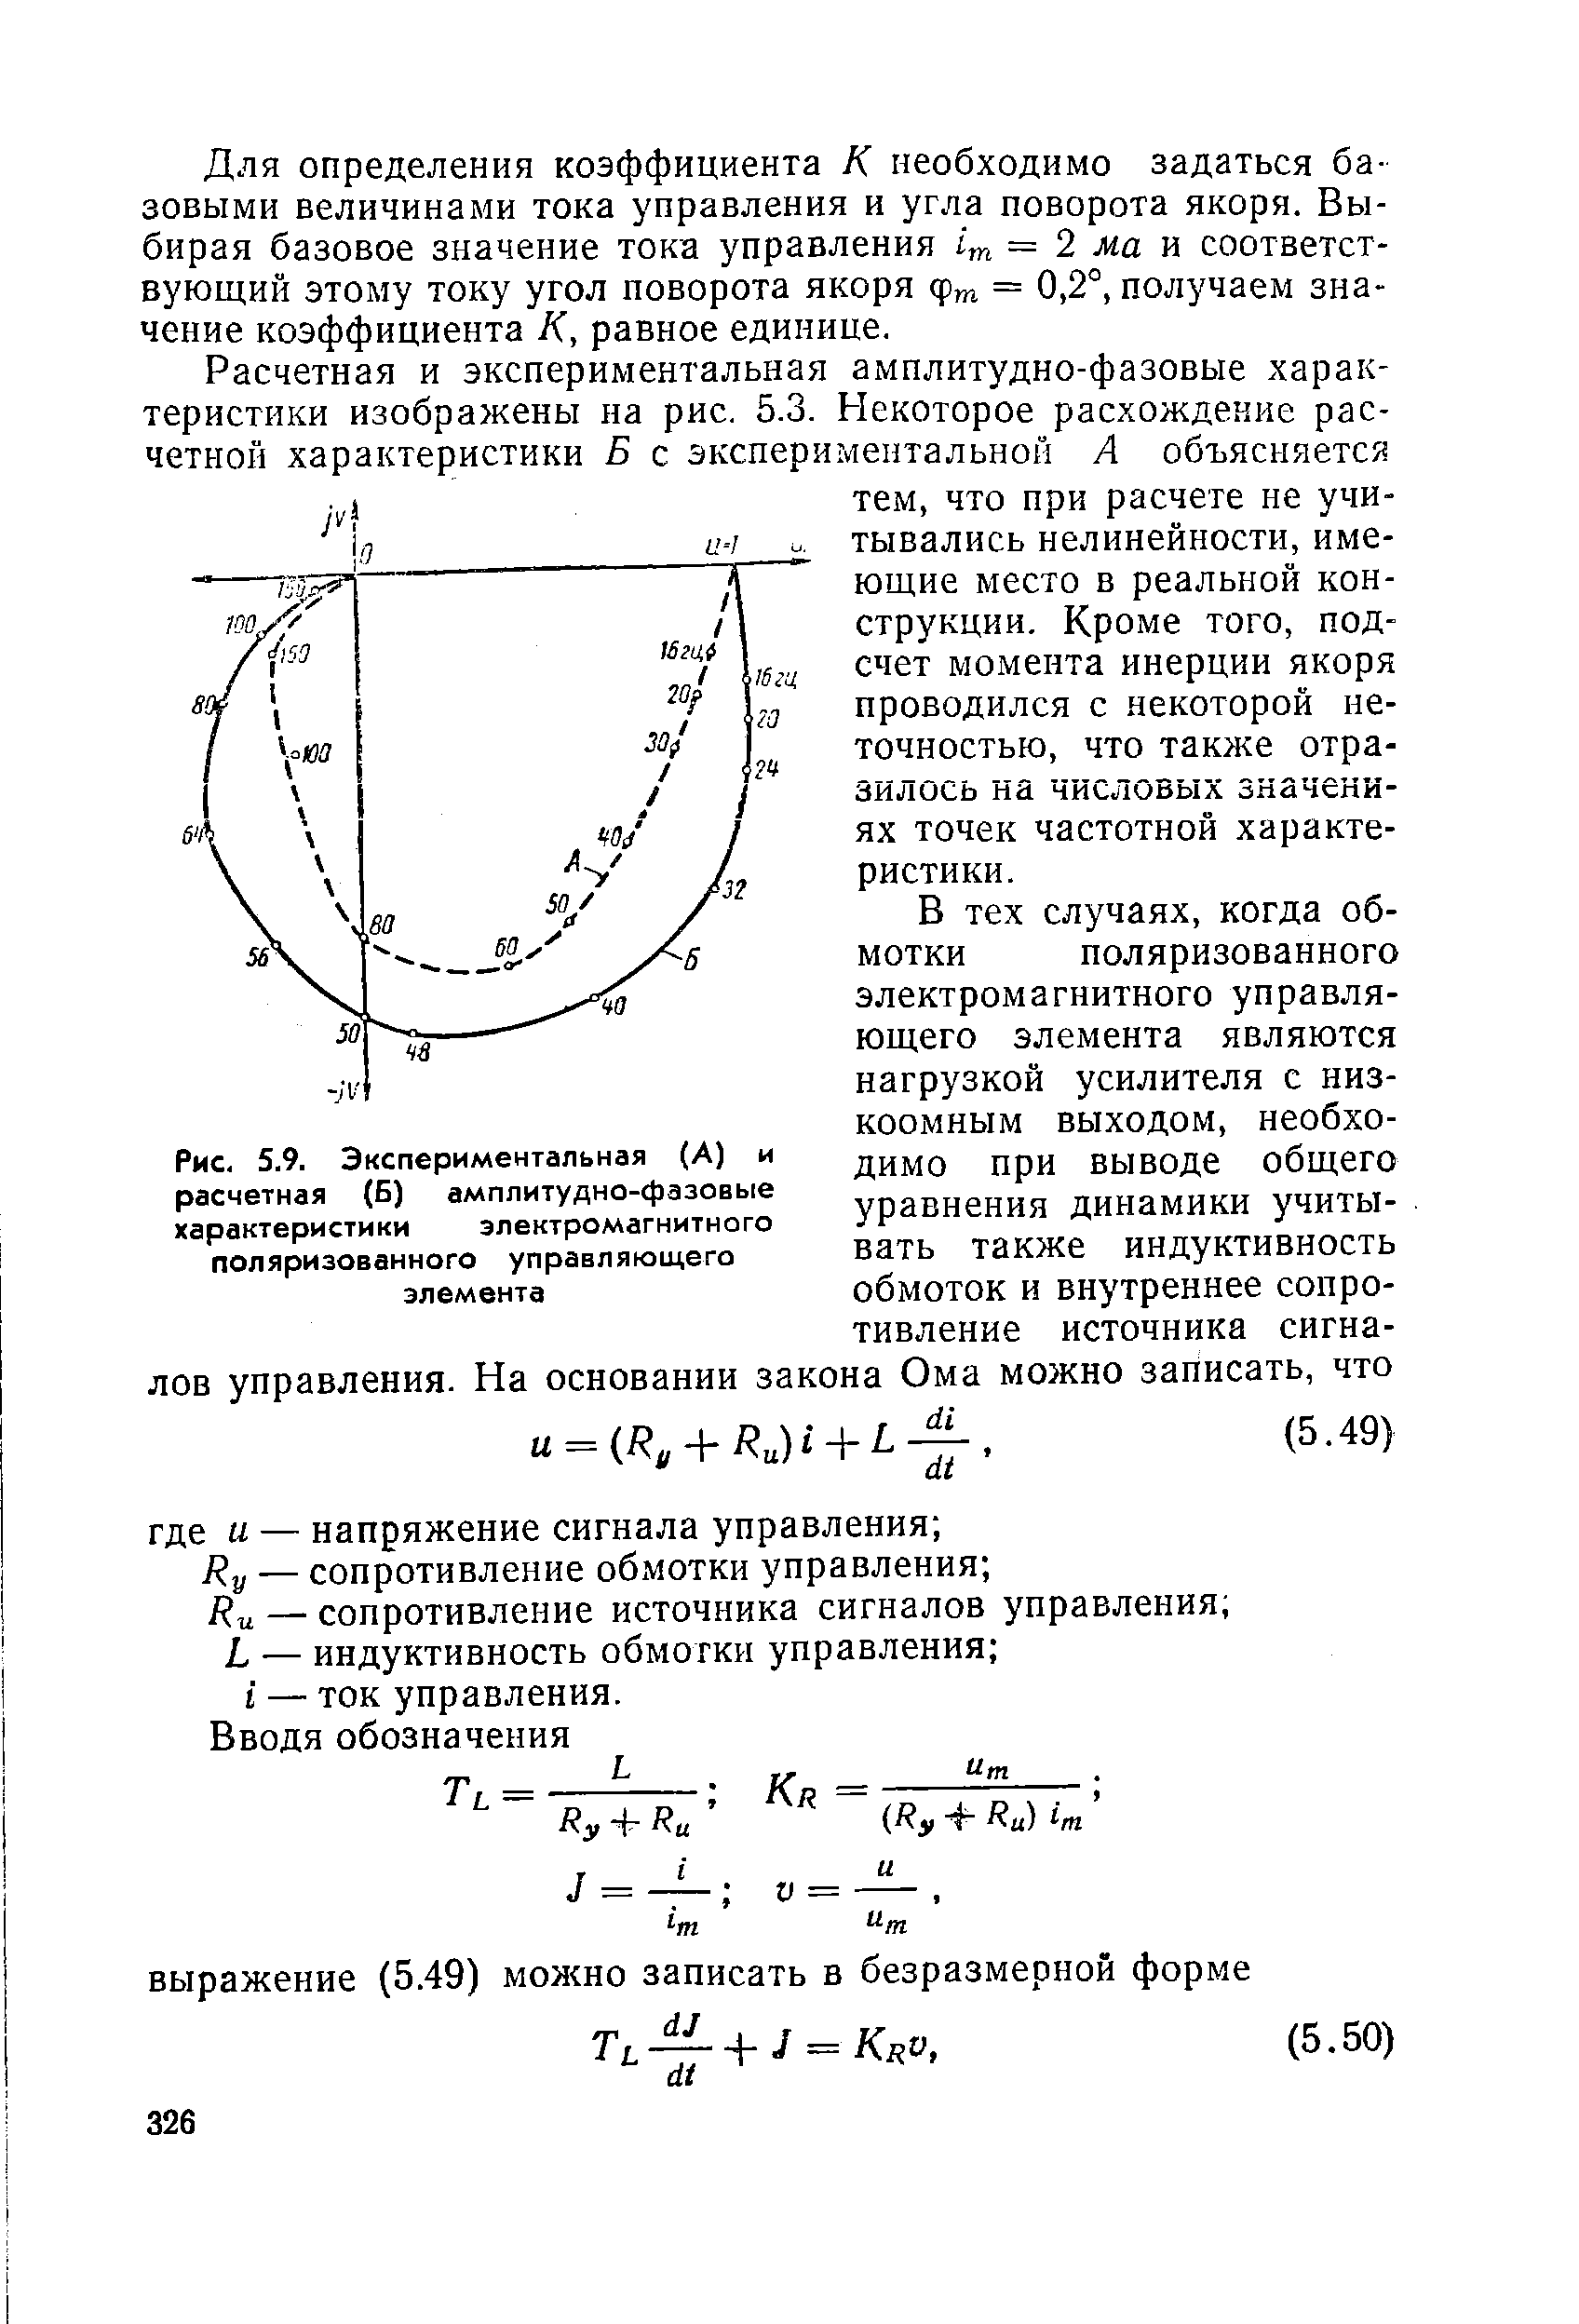 Рис. 5.9. Экспериментальная (А) и расчетная (Б) <a href="/info/21329">амплитудно-фазовые характеристики</a> электромагнитного поляризованного управляющего элемента
